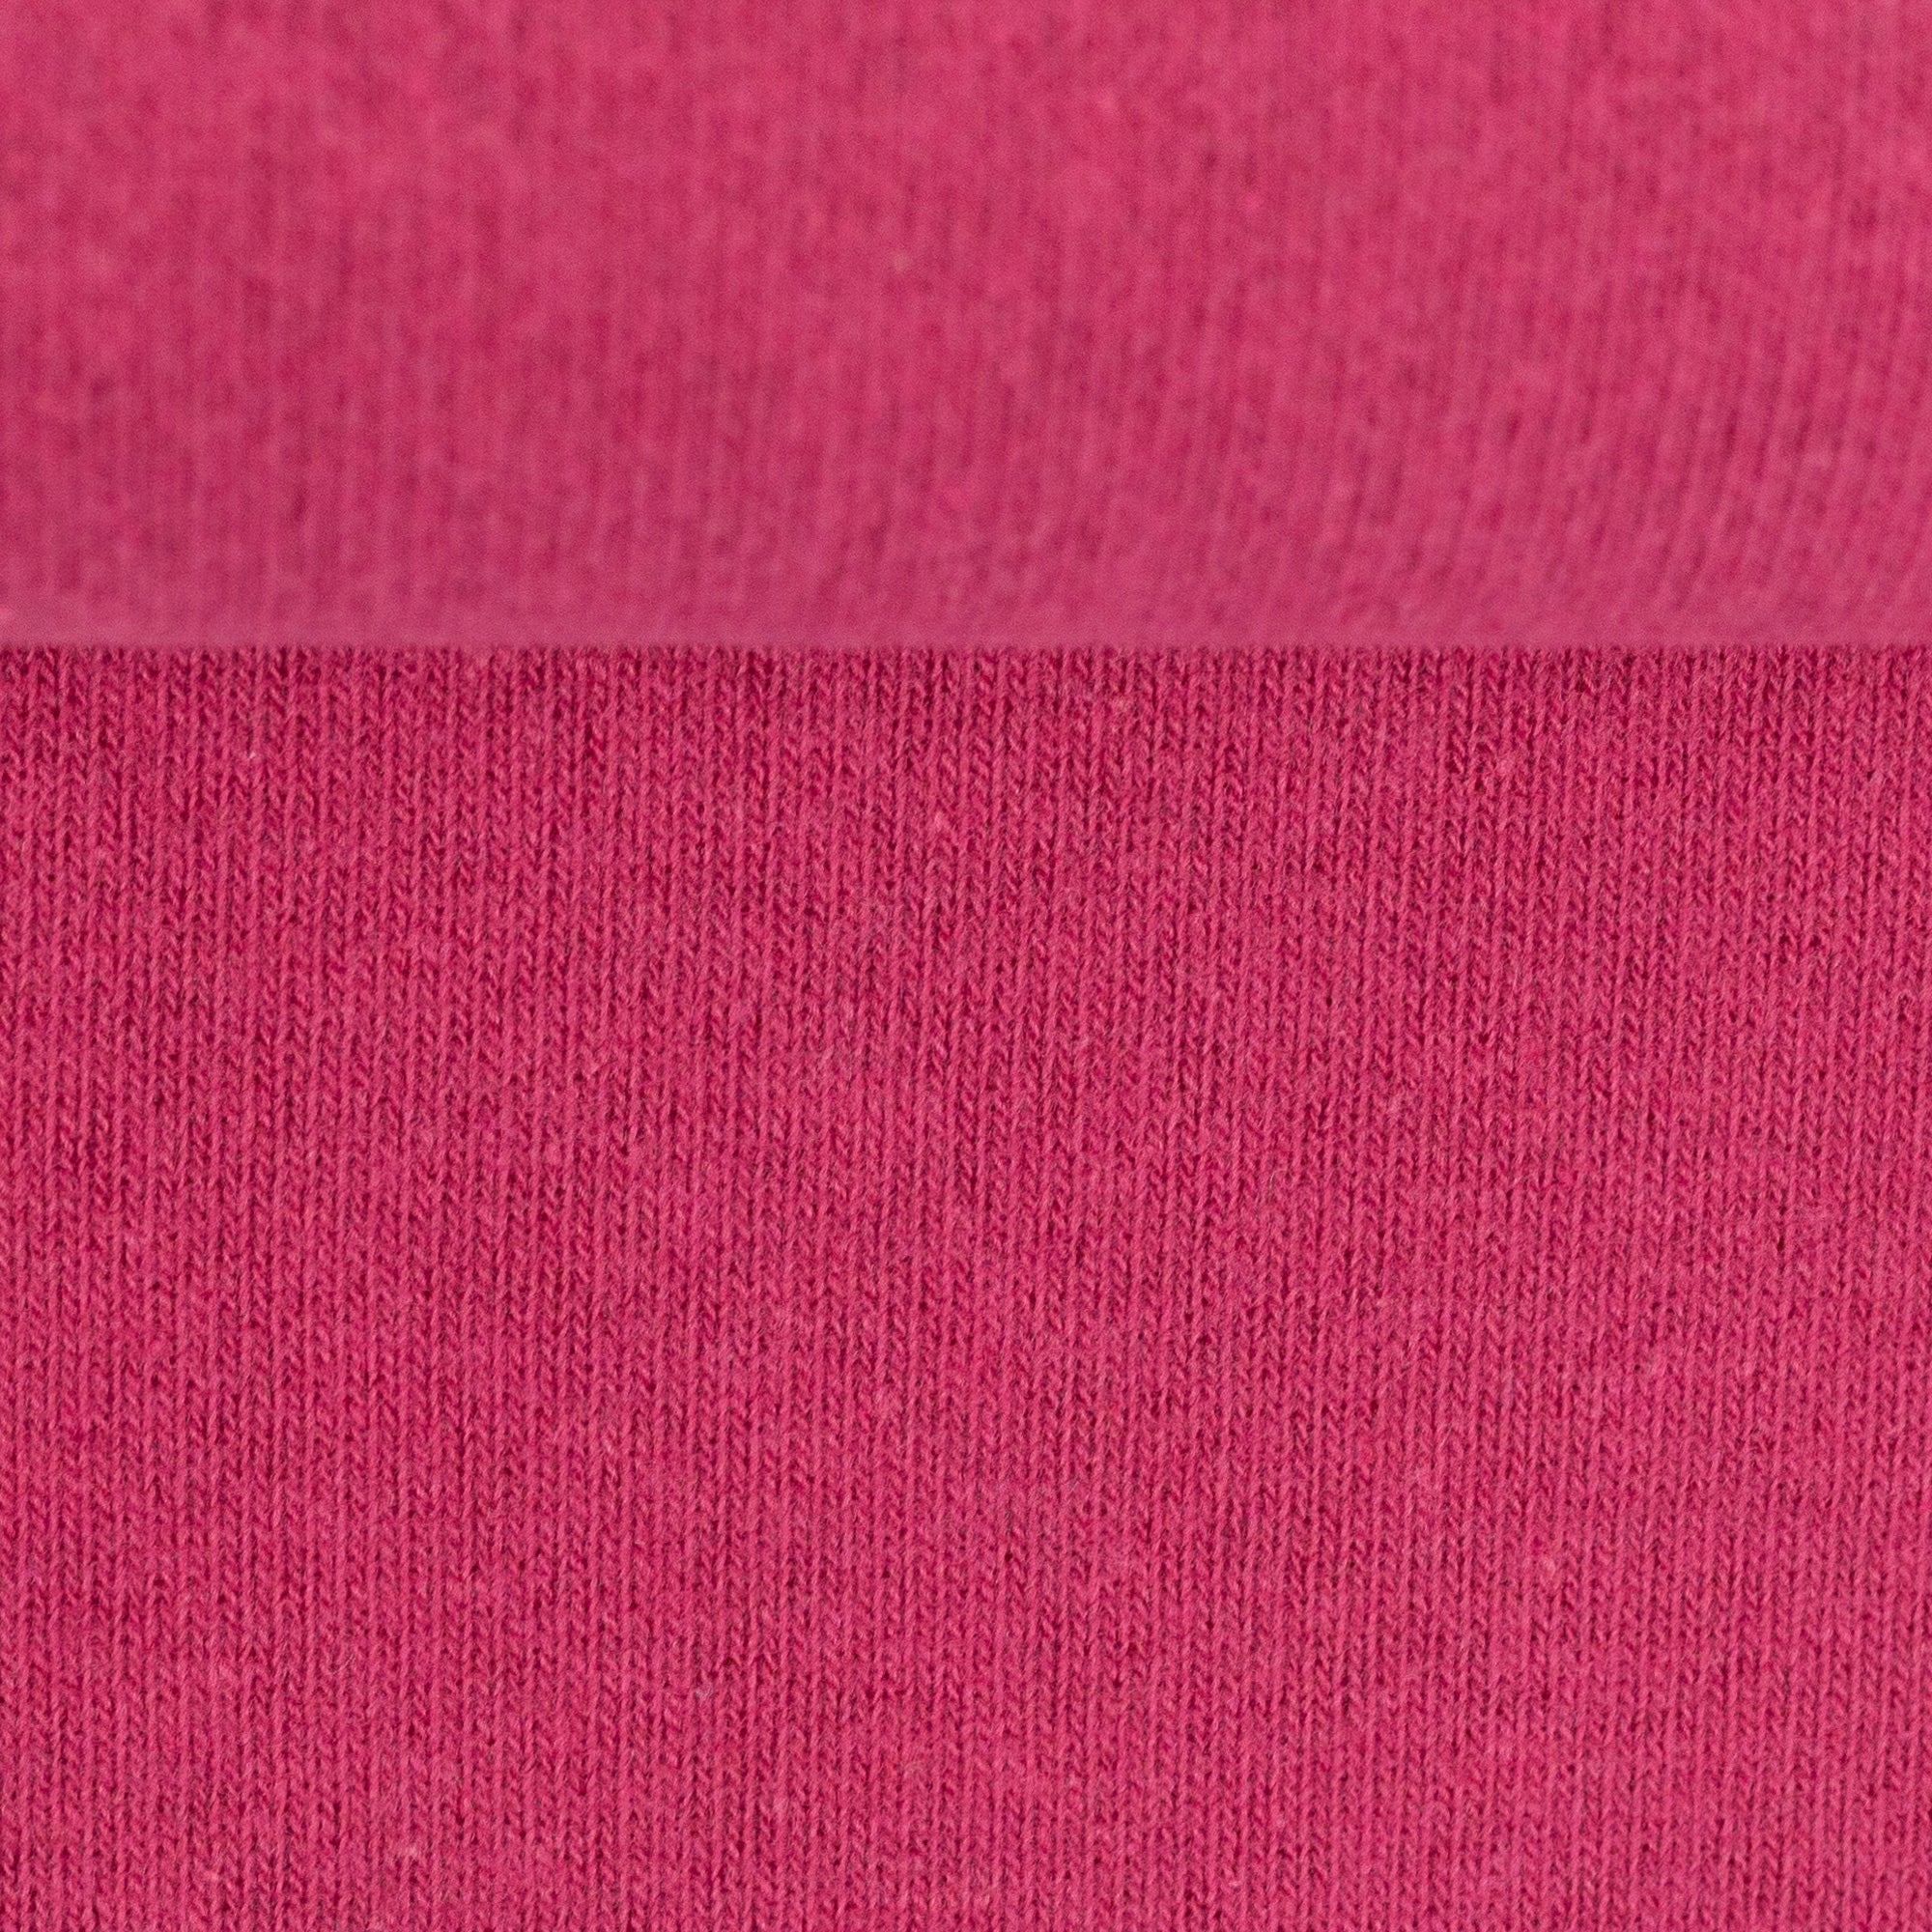 Strickstoff | Bene | Feinstrick pink